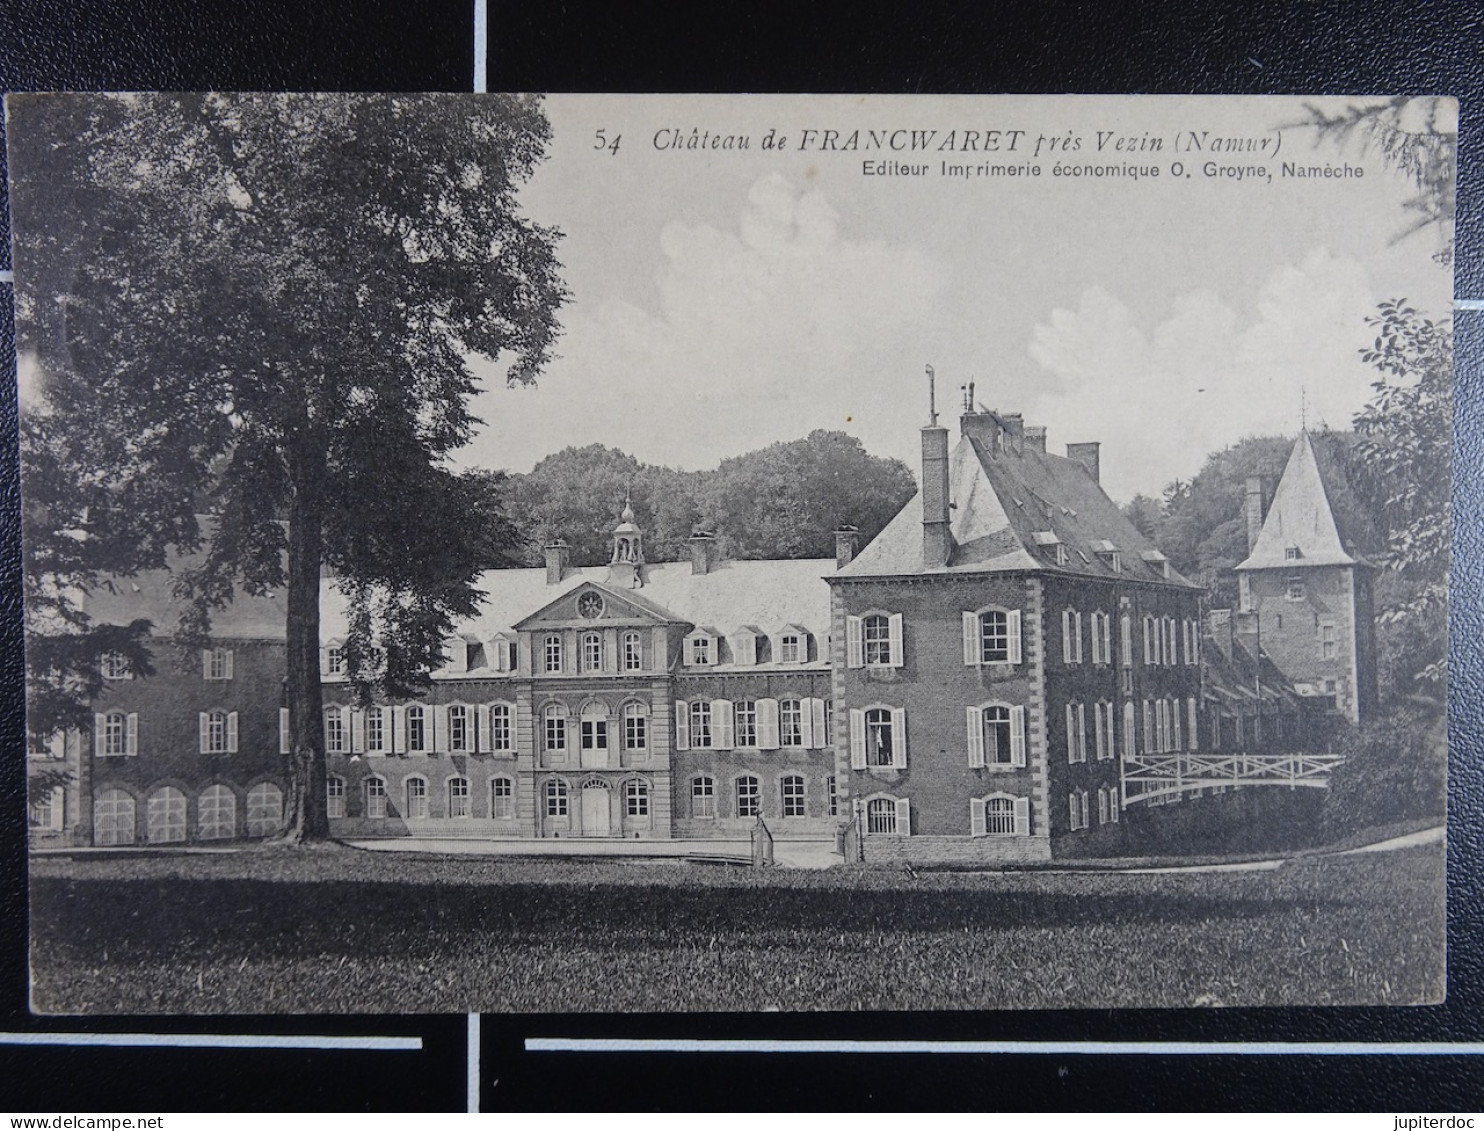 Château De Francwaret Près Vezin (Namur) - Fernelmont